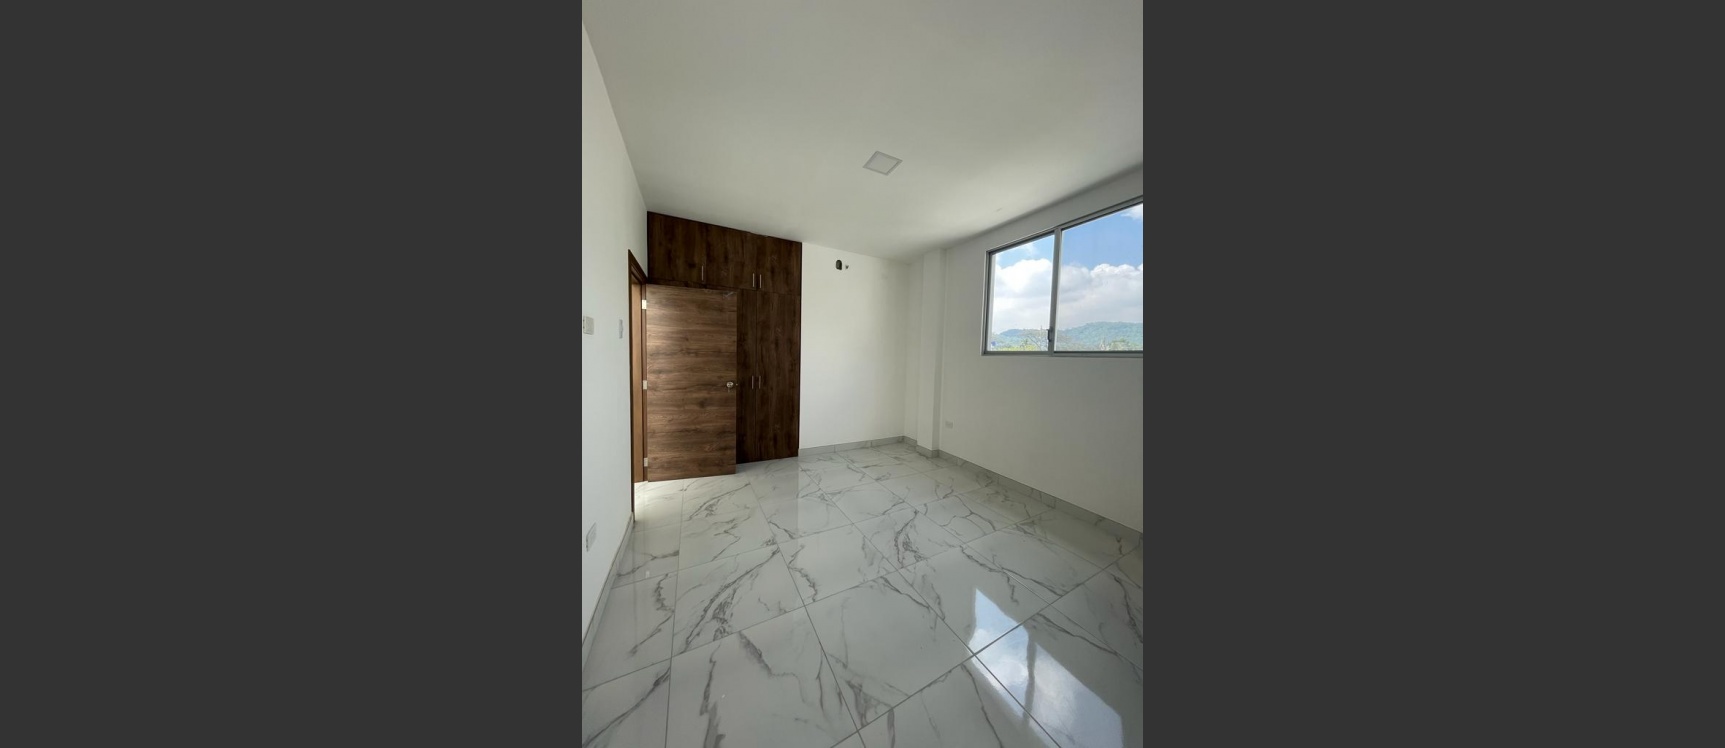 GeoBienes - Casa de estreno en venta ubicada en al Urbanización Santa Cecilia, Ceibos - Plusvalia Guayaquil Casas de venta y alquiler Inmobiliaria Ecuador